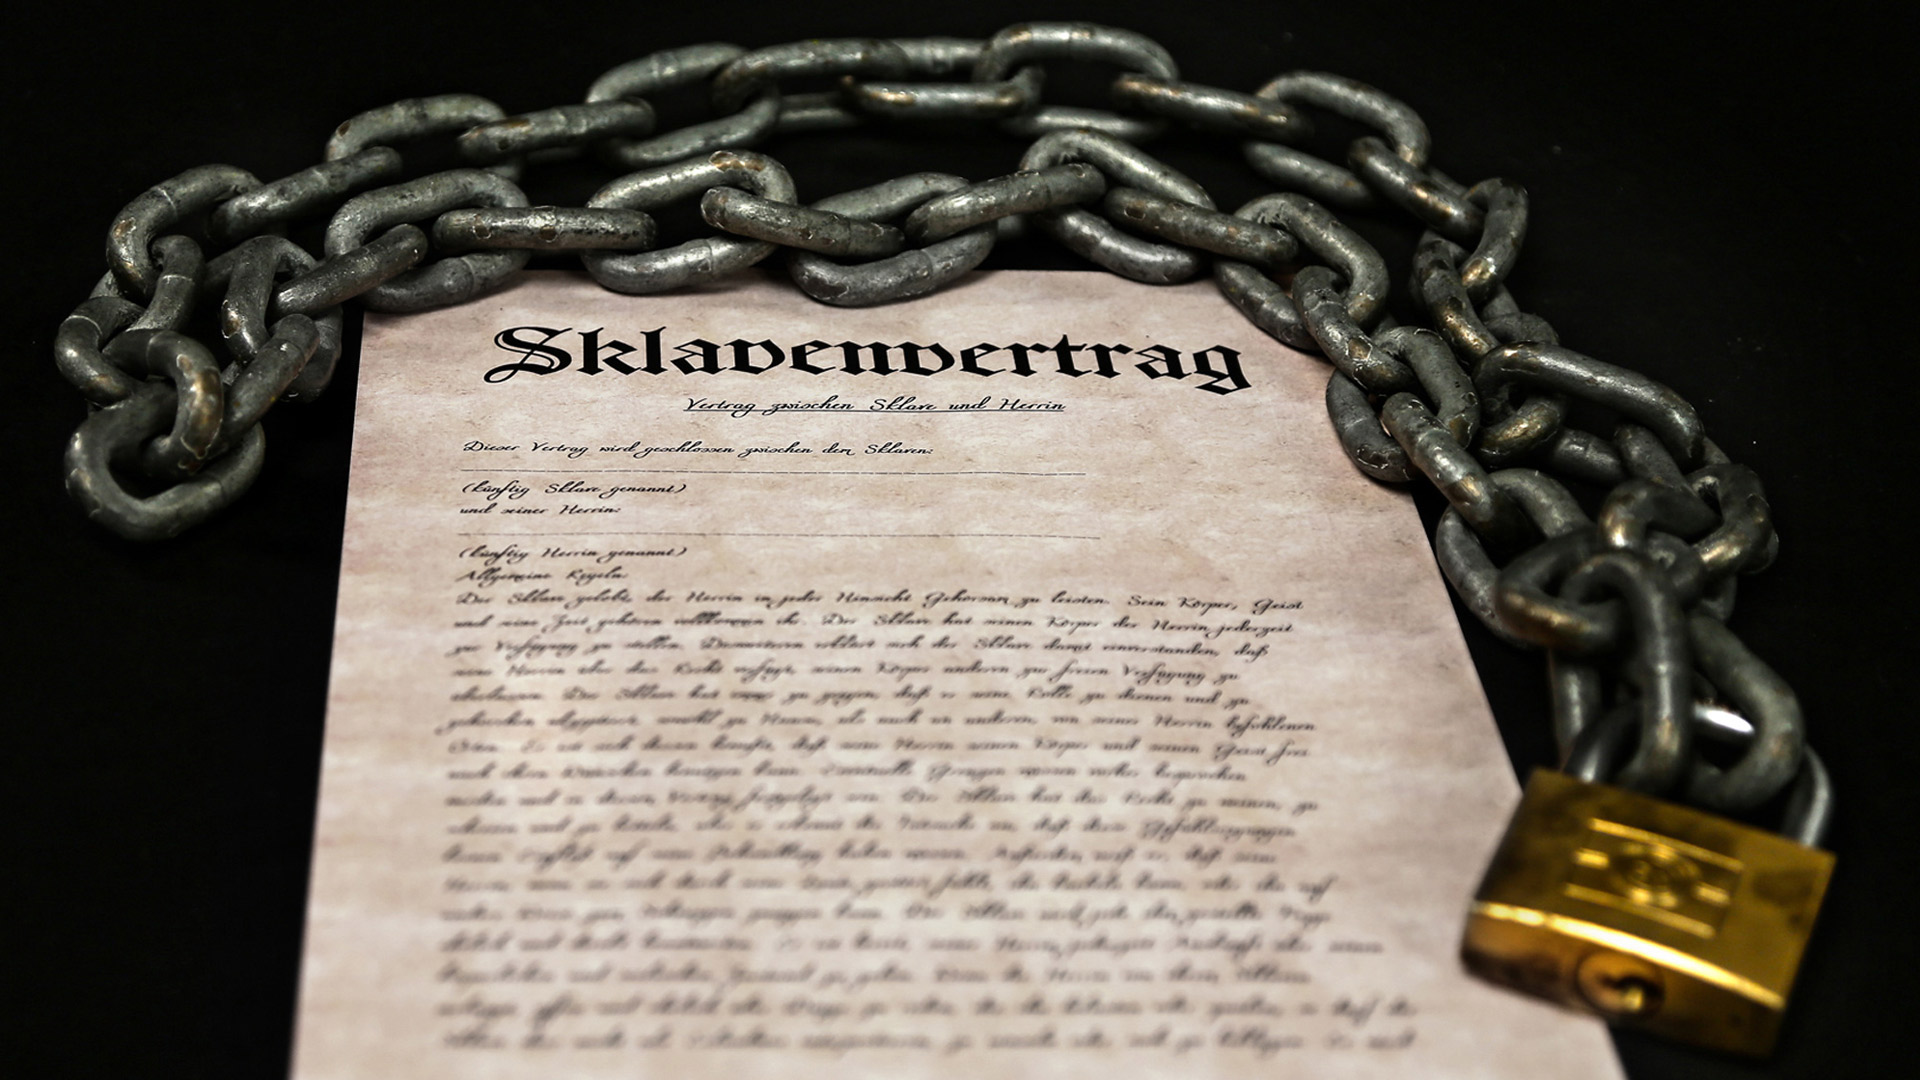 Ein Sklavenvertrag regelt das Verhältnis zwischen Amalie von Stein und dem Sklaven. Hier kannst du meine Sklavenregeln inklusive Vorlieben und Verhaltensweisen einsehen.